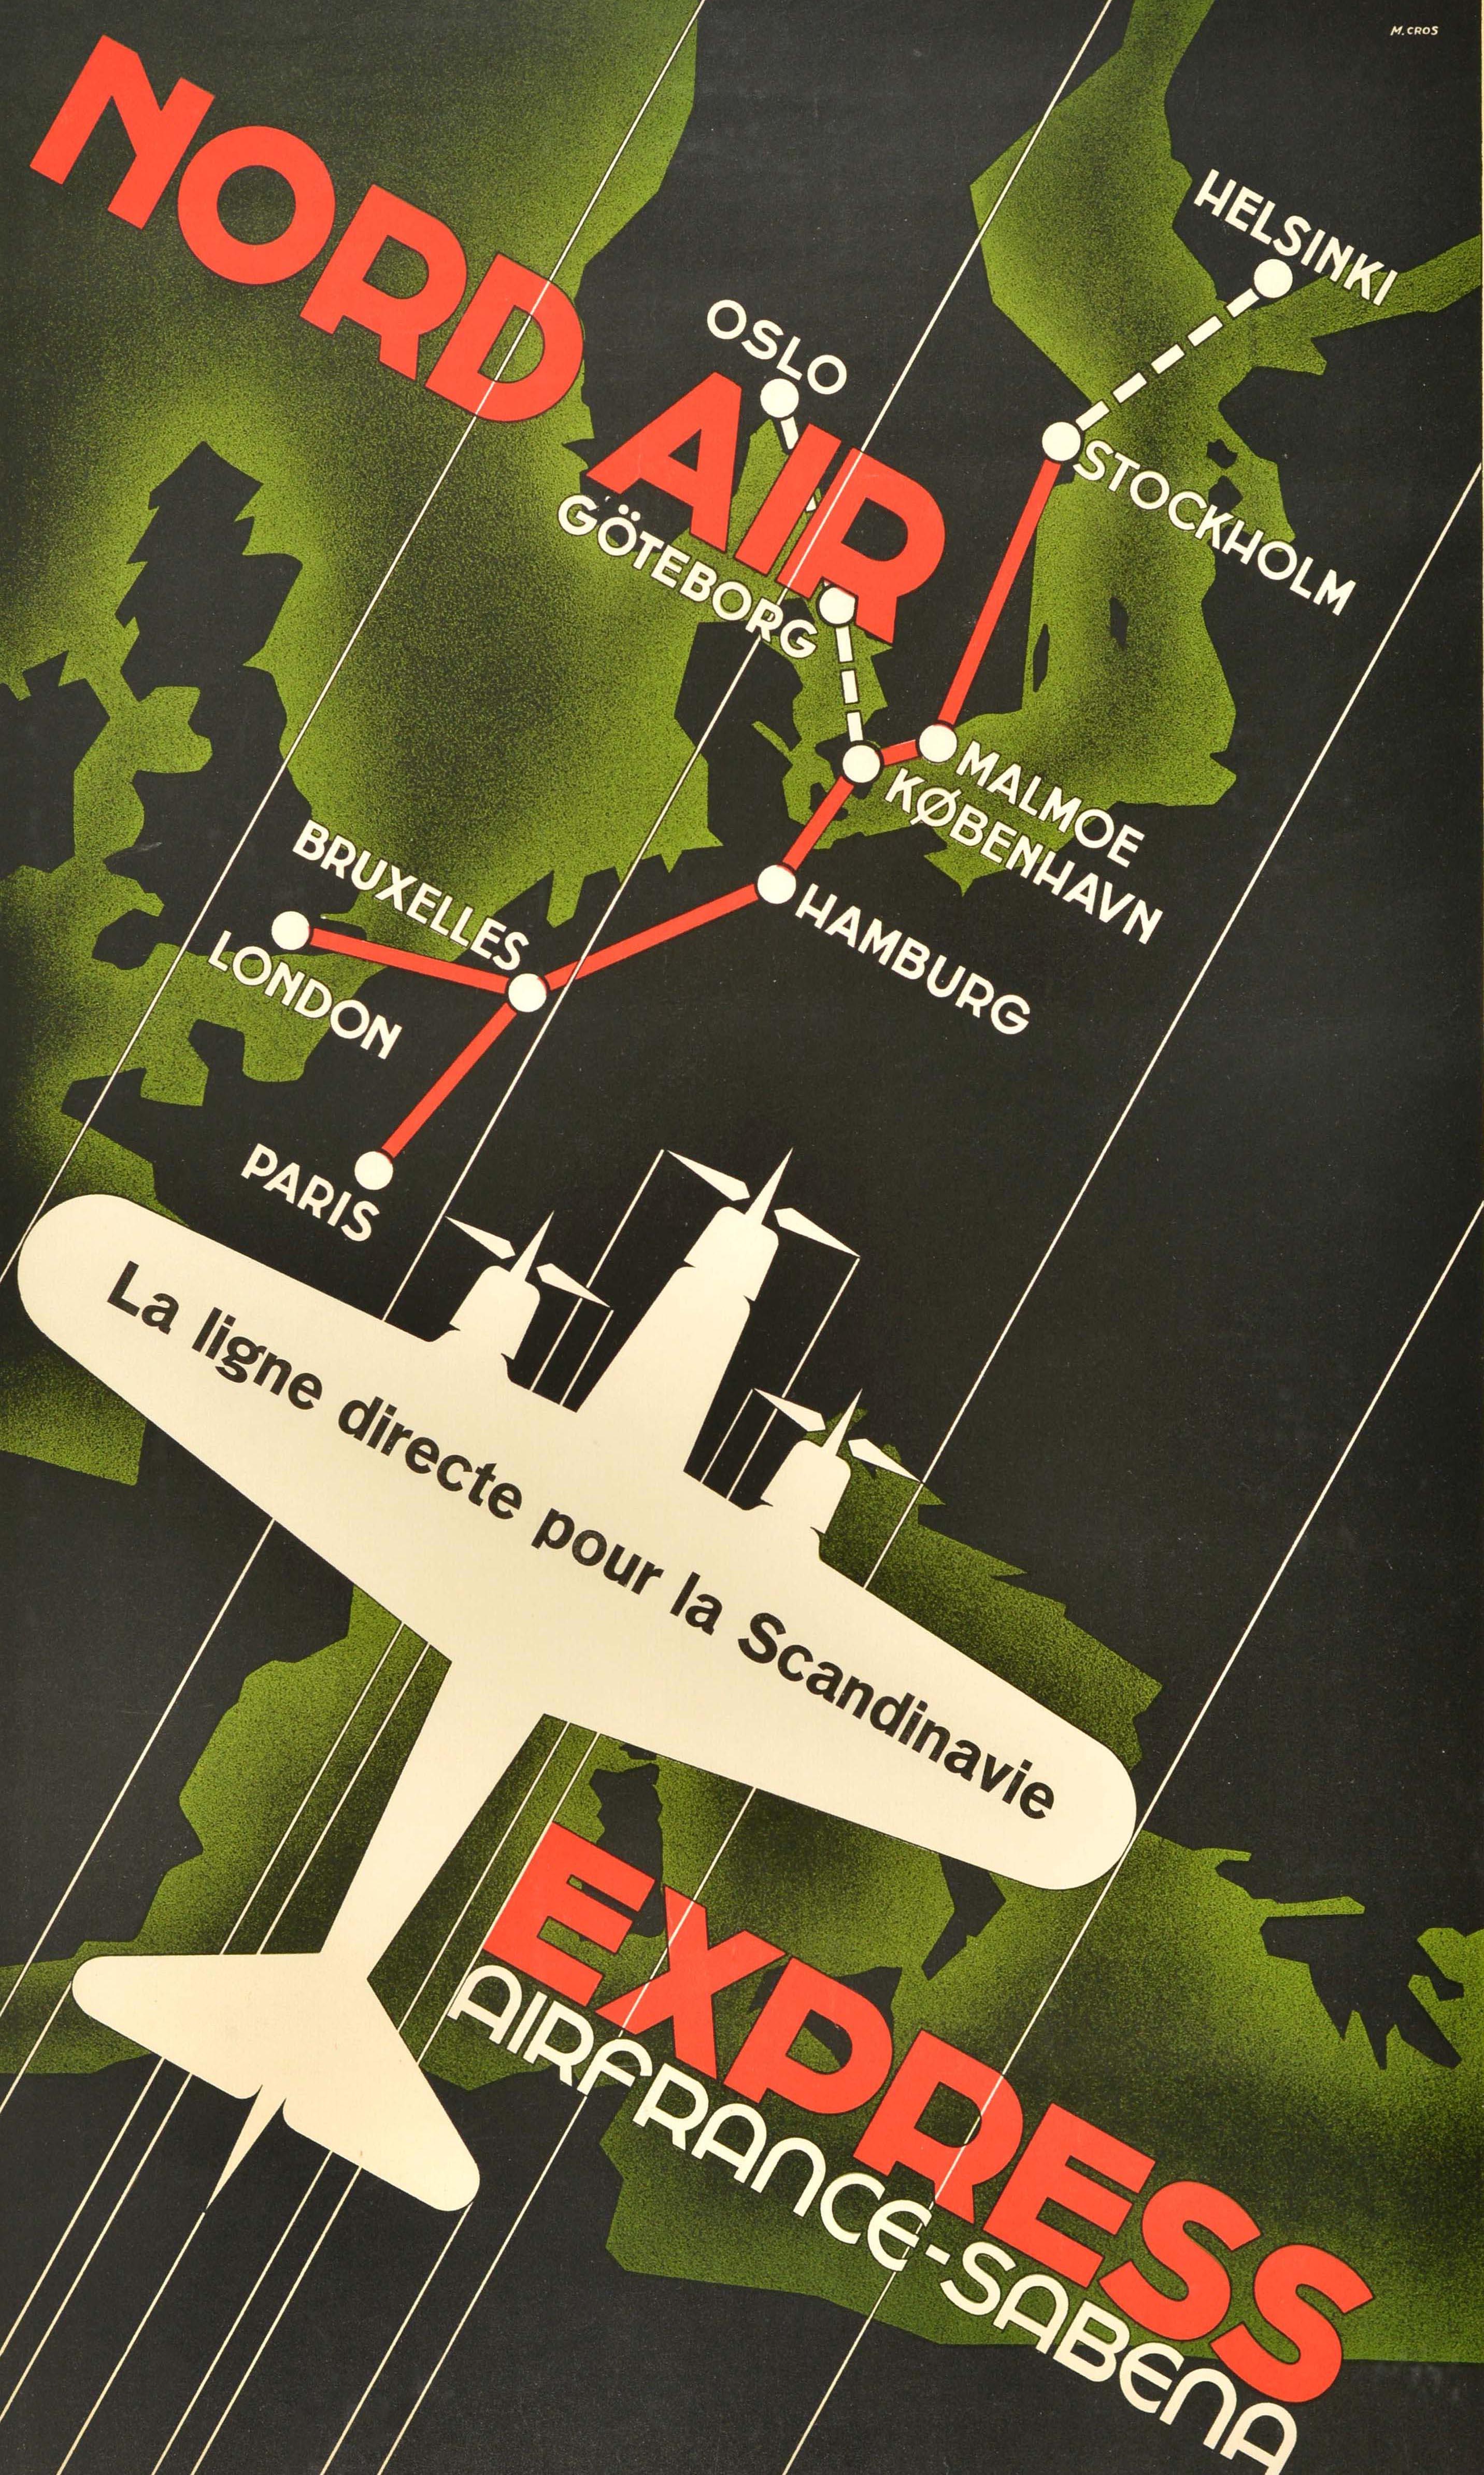 Affiche publicitaire originale de voyage pour Nord Air Express Air France Sabena, représentant un avion à hélice tri-moteur volant à grande vitesse au-dessus d'une carte de l'Europe indiquant en rouge l'itinéraire reliant Paris Londres Bruxelles